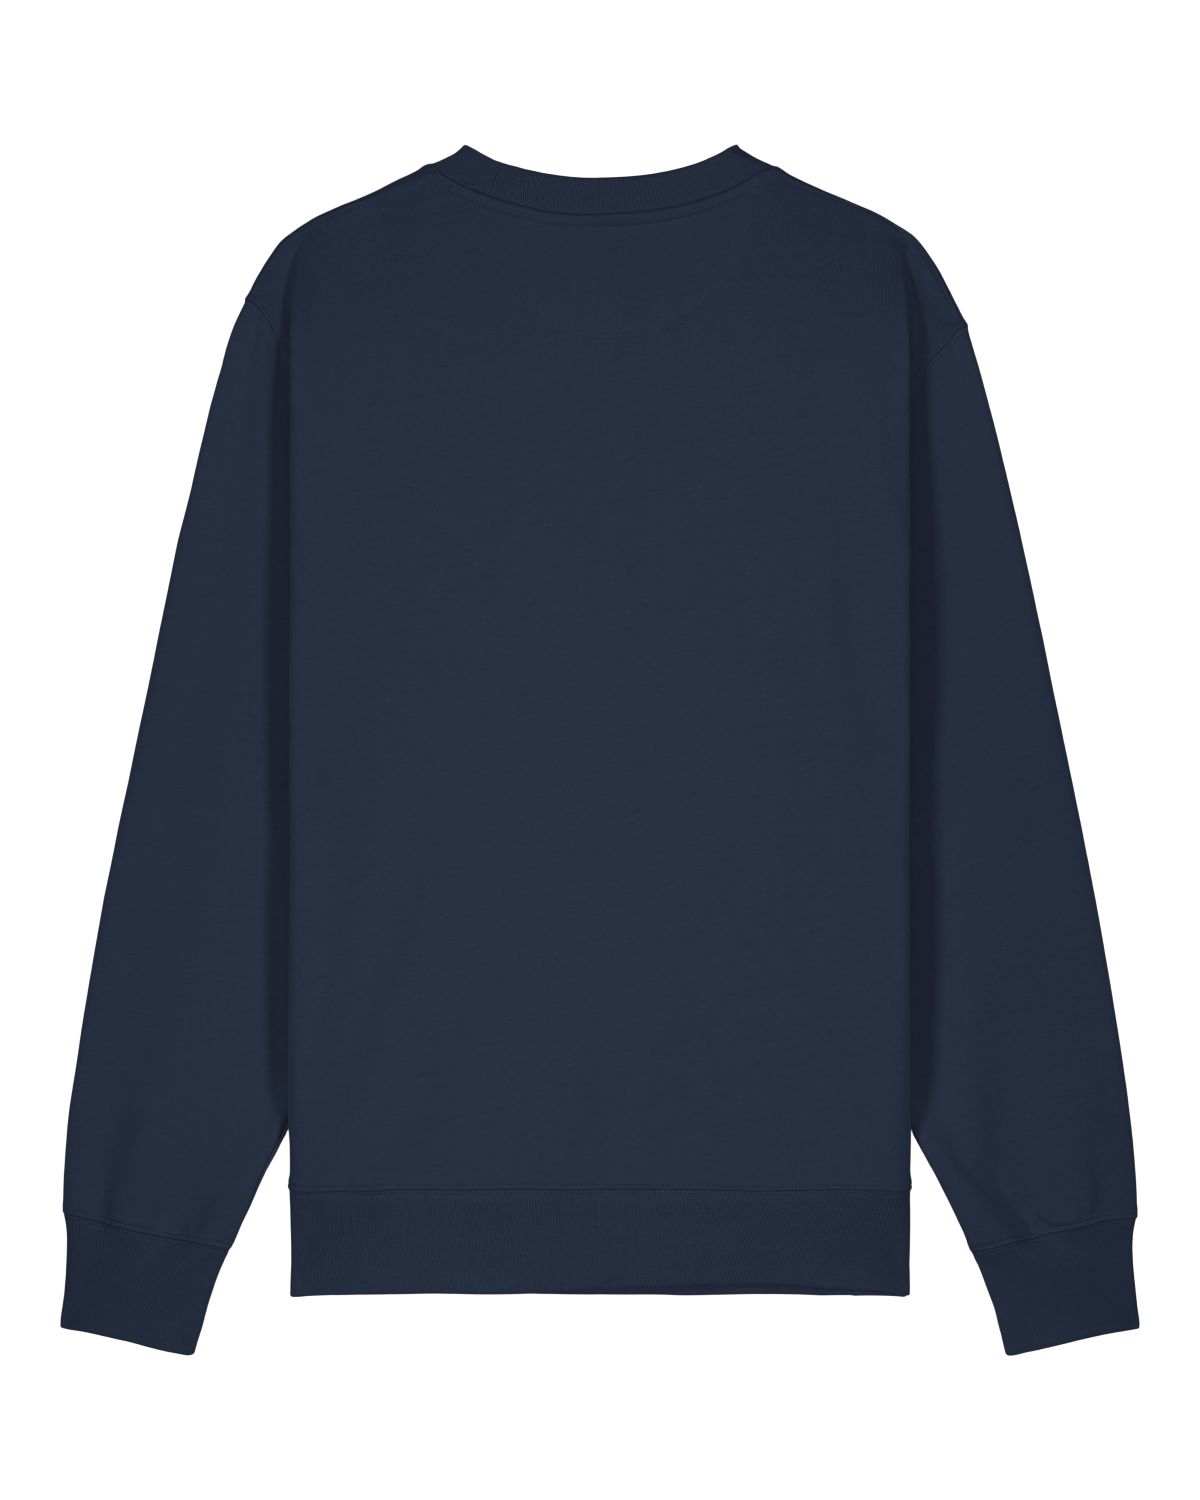 Sweatshirt "Moin" Blau/Weiss